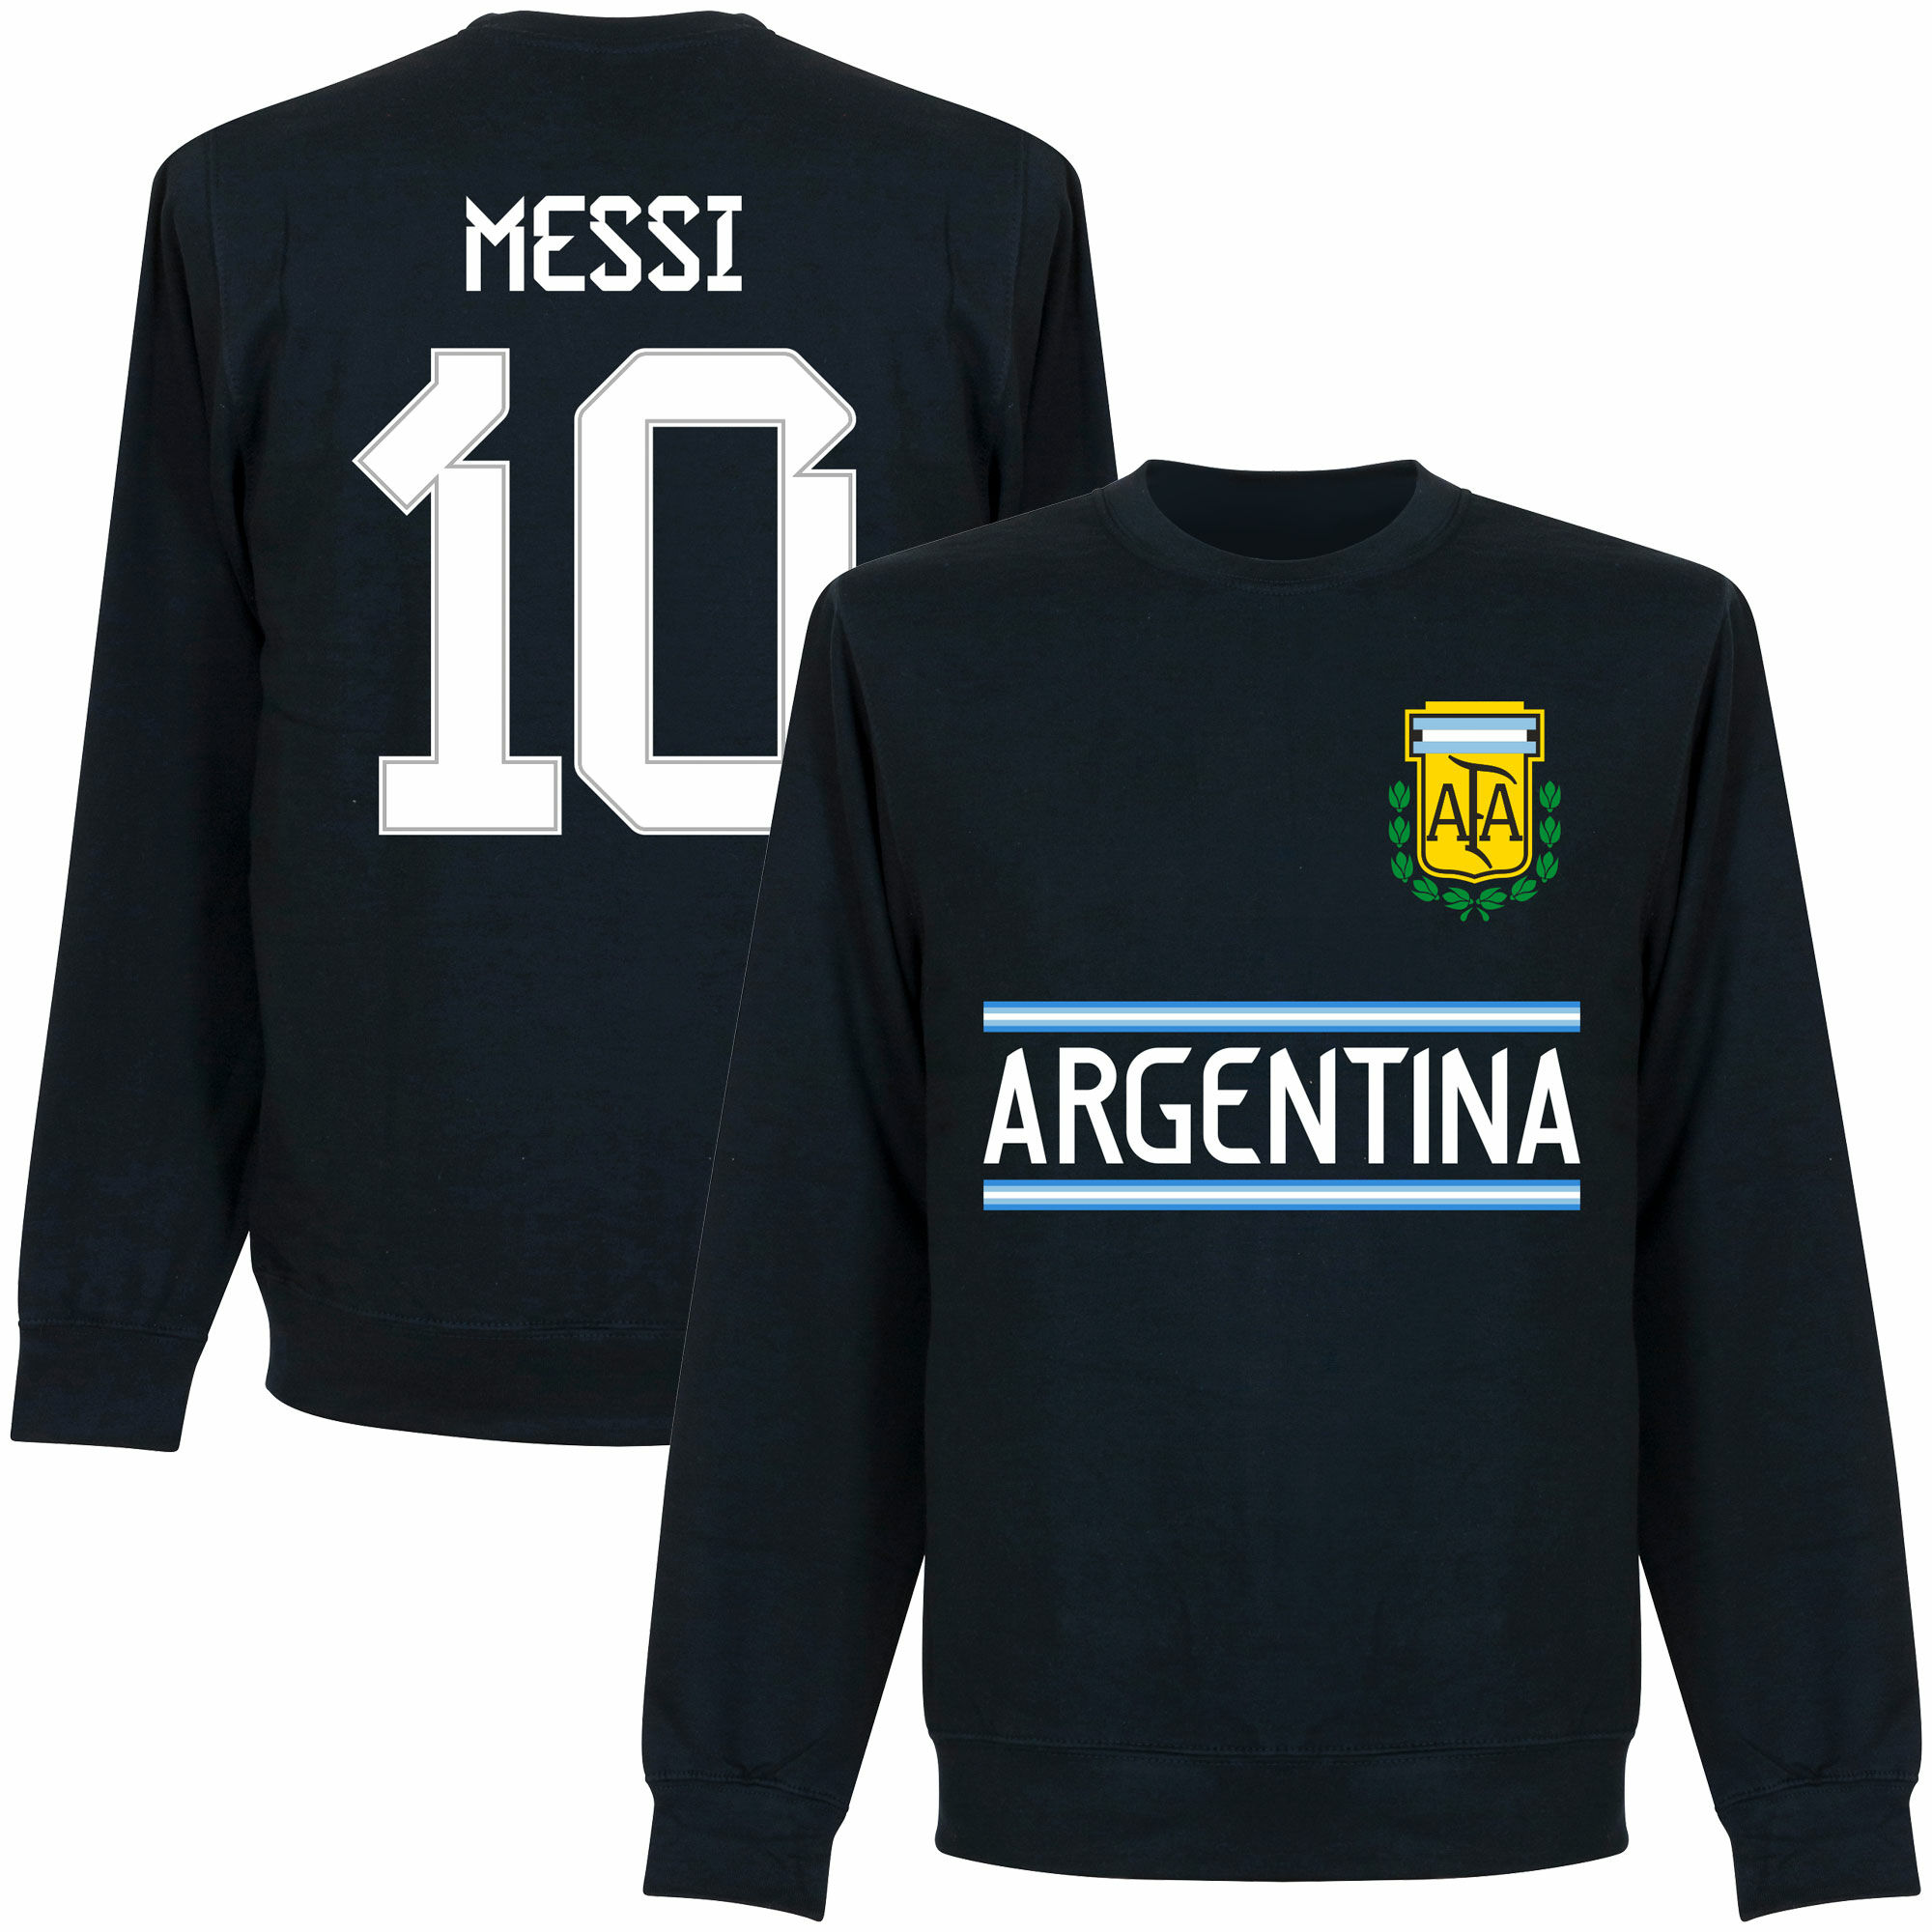 Argentina - Mikina dětská - modrá, číslo 10, Lionel Messi